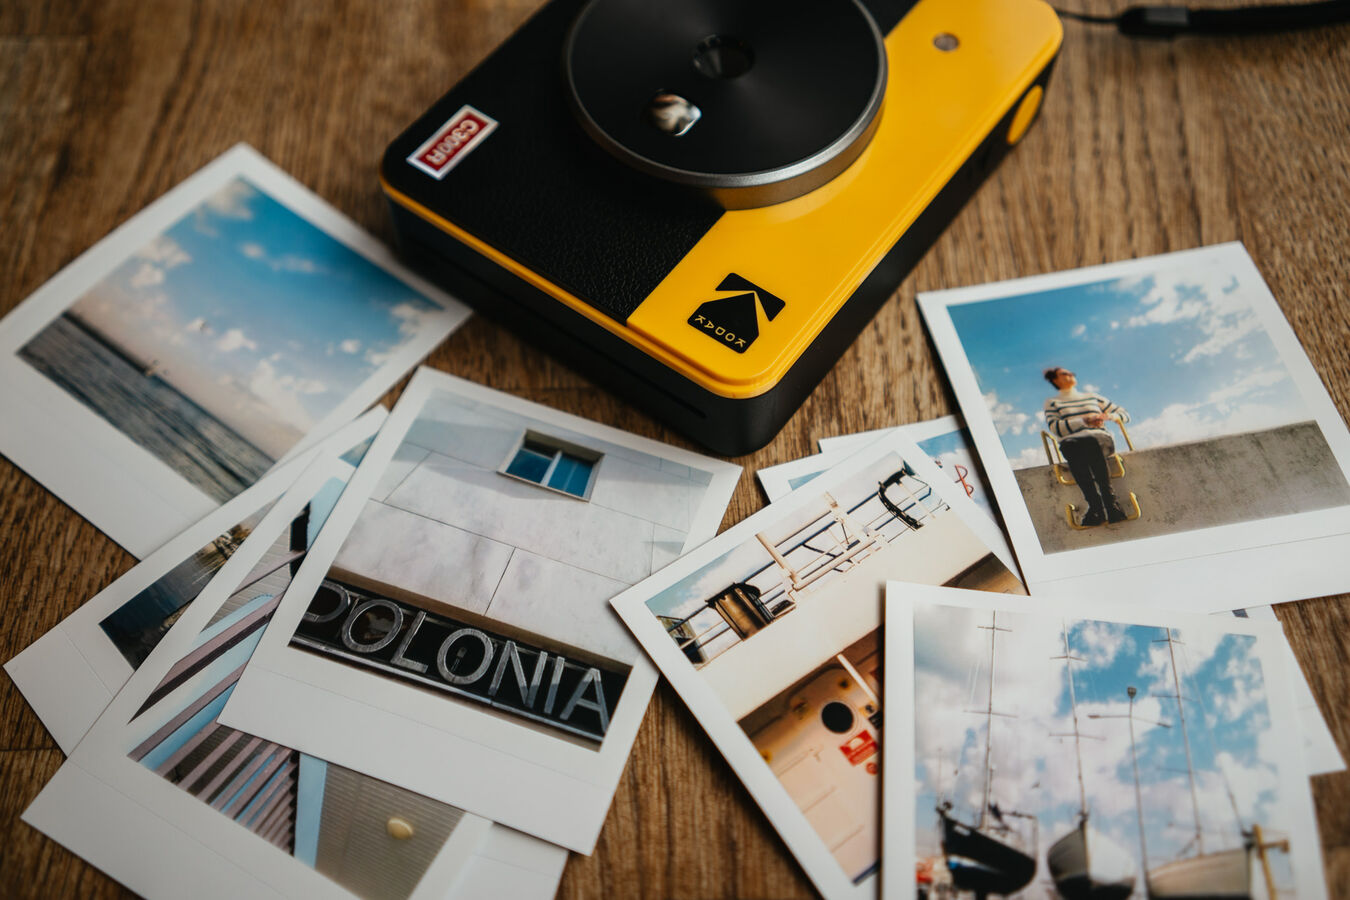 Aparat Kodak Mini Shot 3 Retro Yellow + 2 wkłady (60 zdjęć) + akcesoria